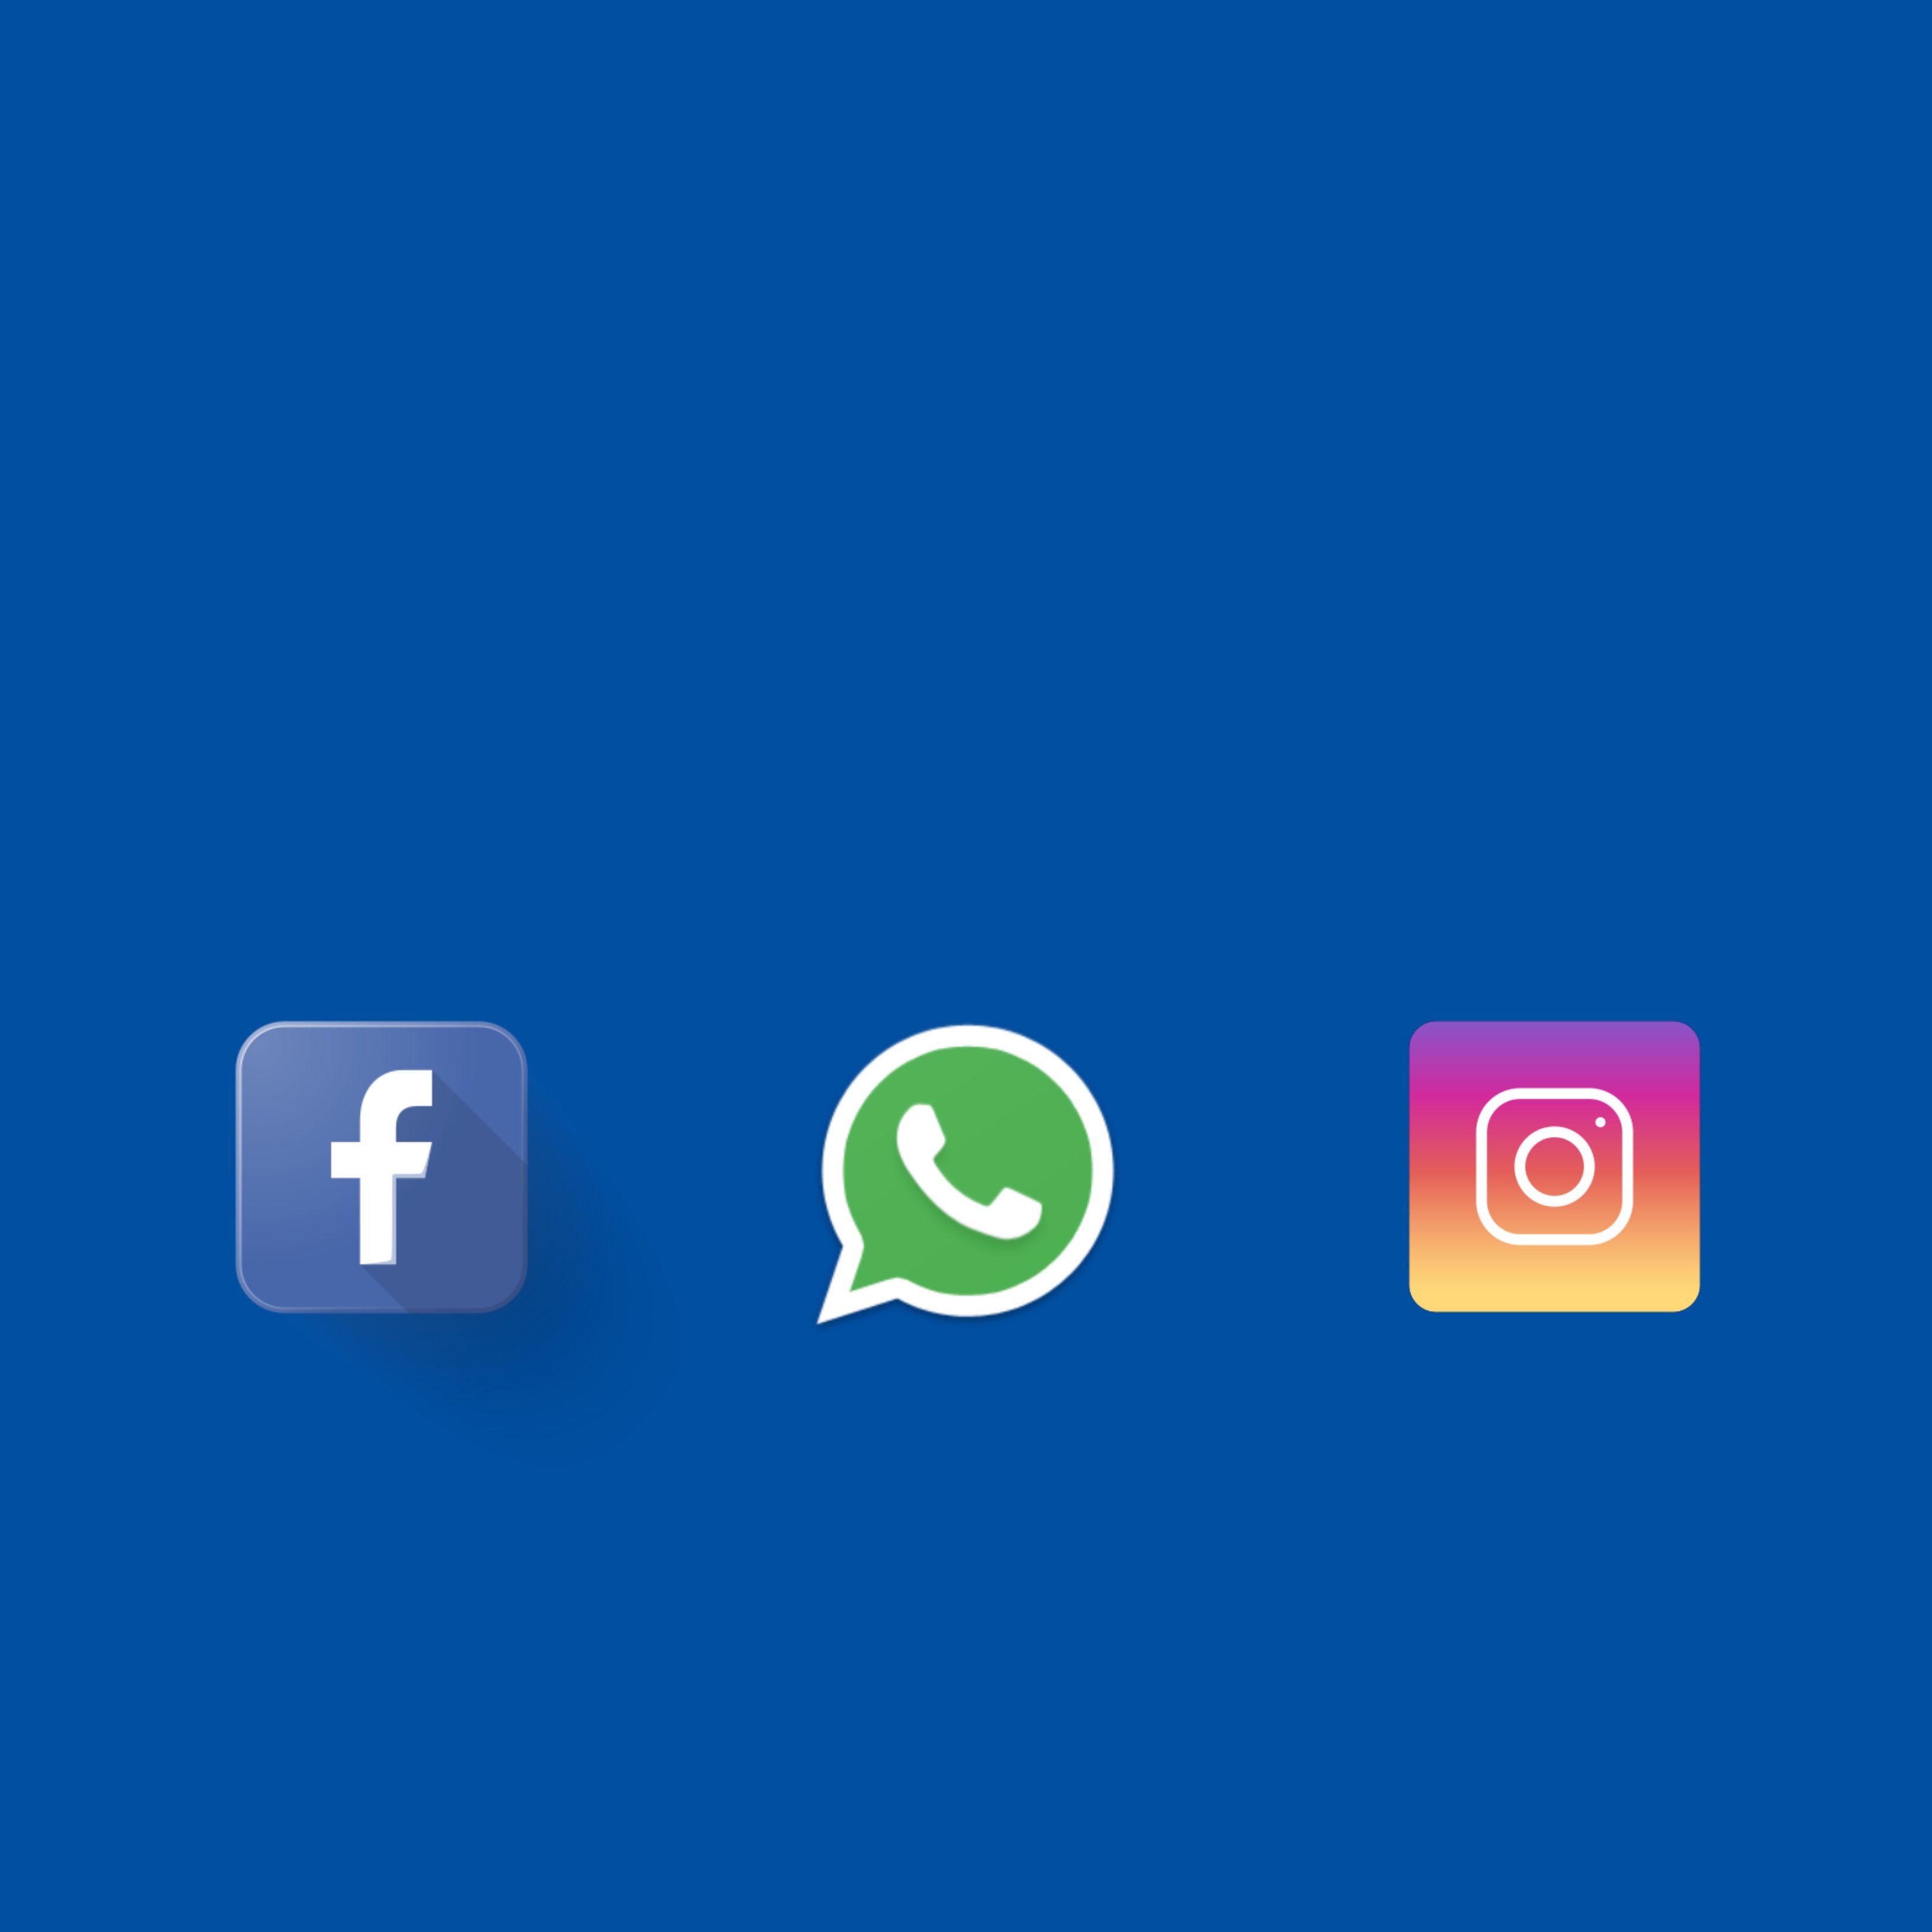 Per què t'hauria de preocupar la fusió entre els missatges de Facebook, WhatsApp i Instagram